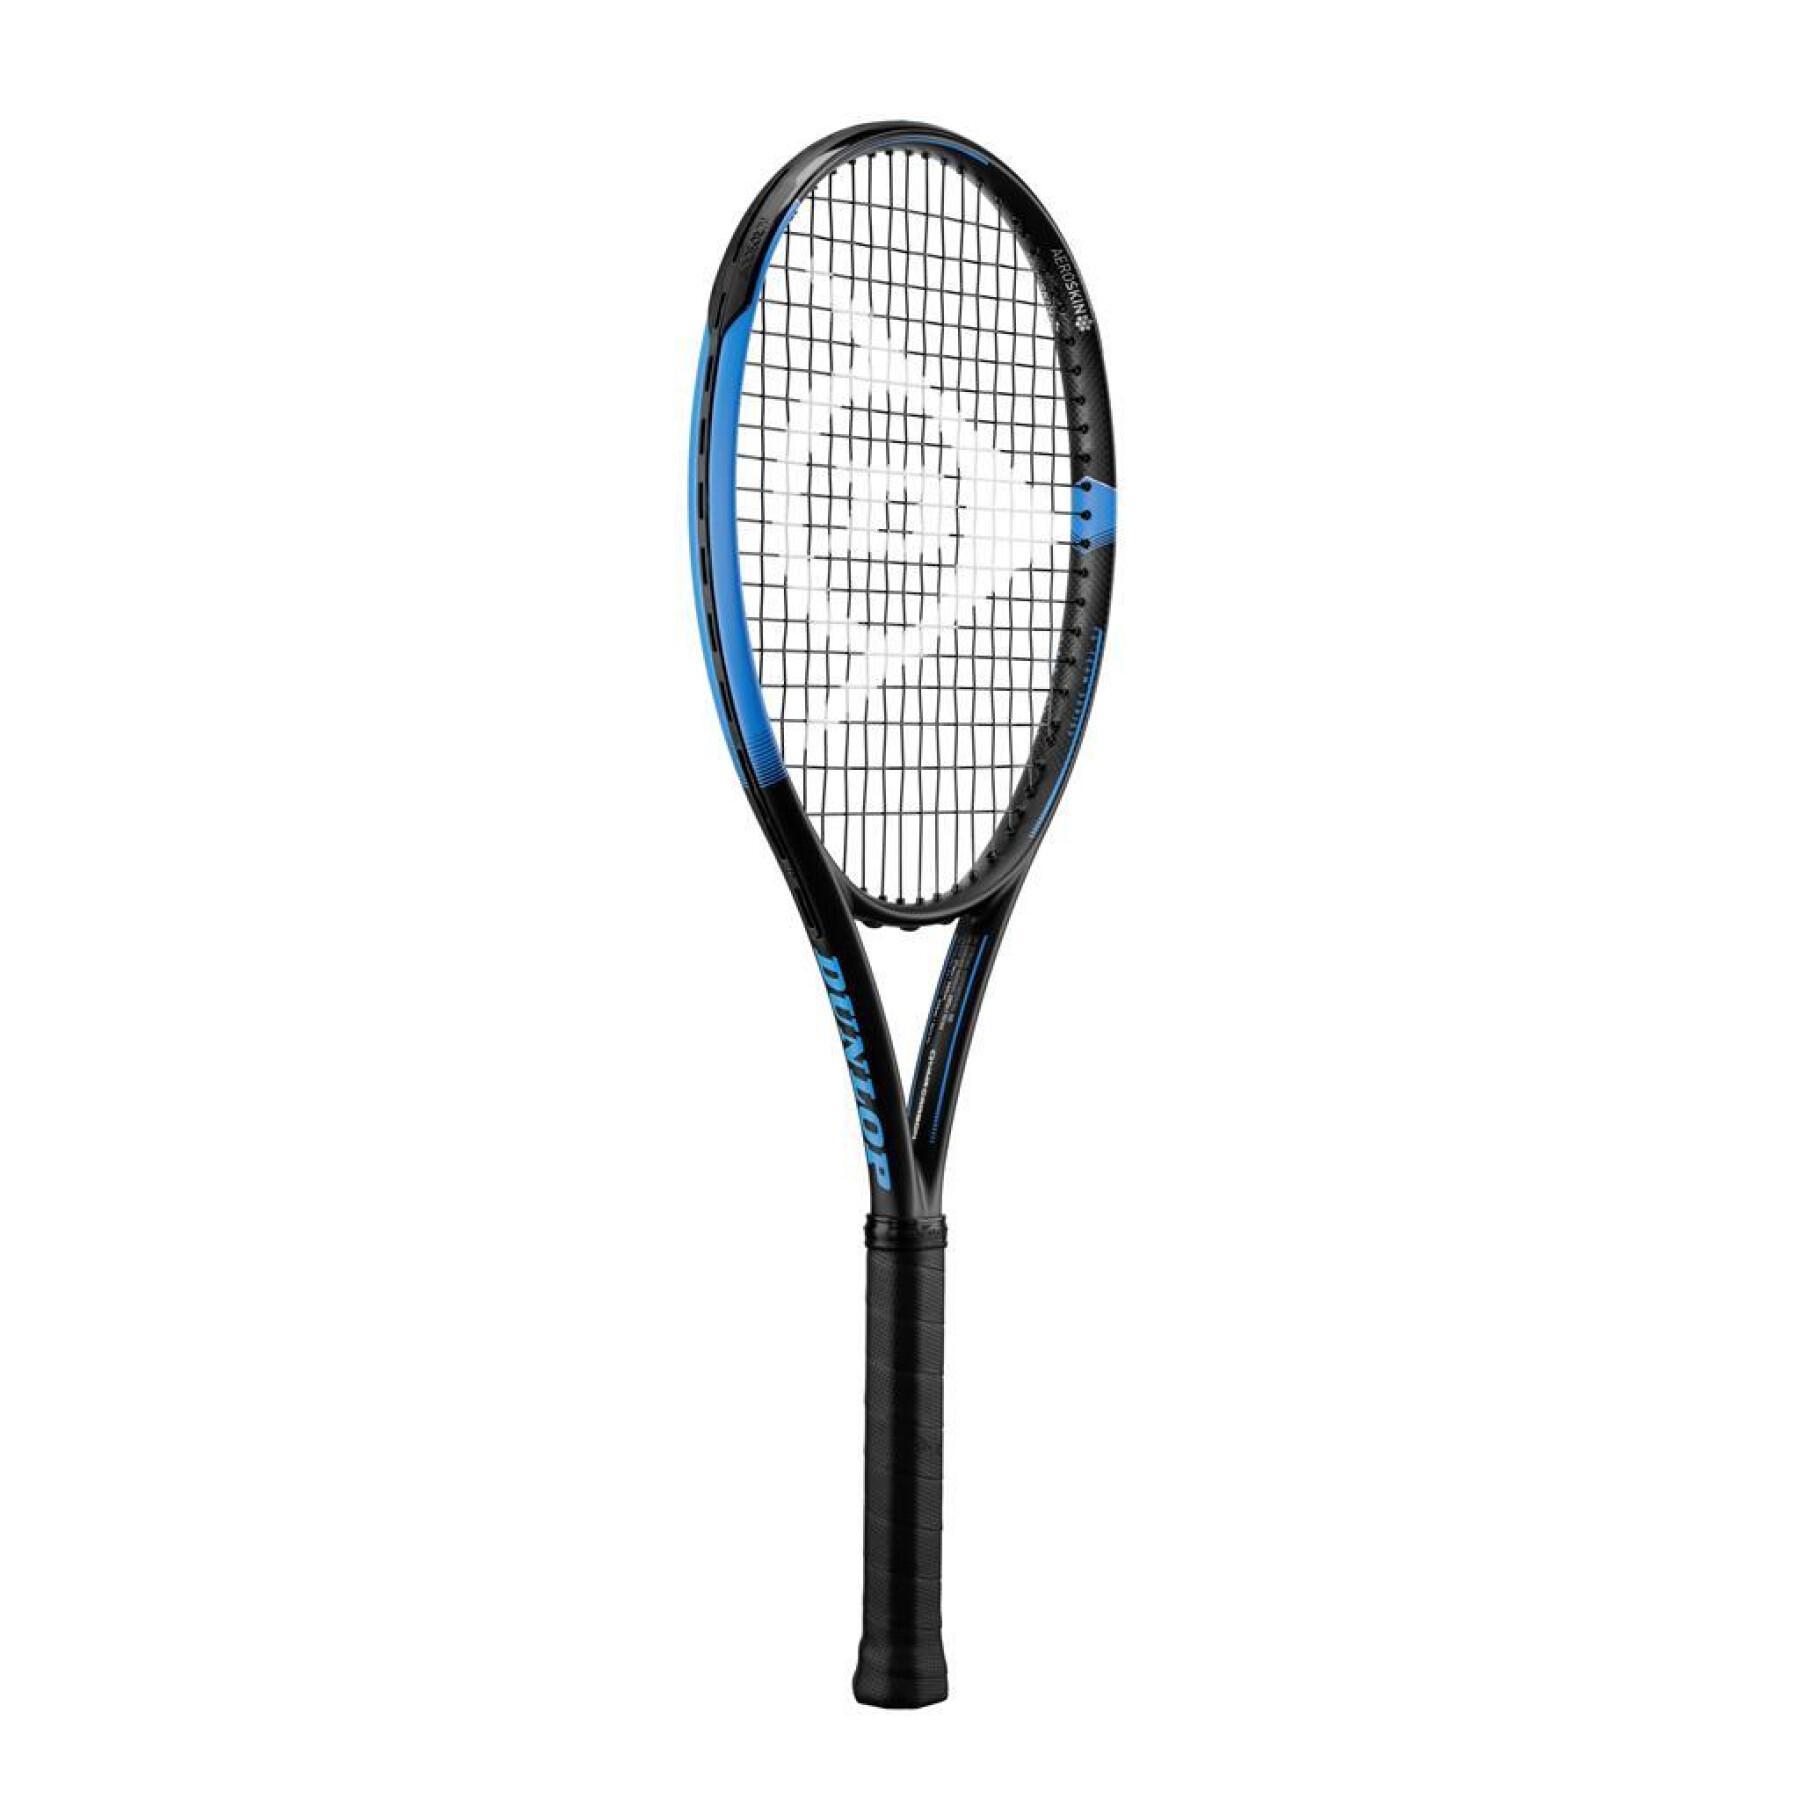 Tennis racket for kids Dunlop Fx Team 285 G4